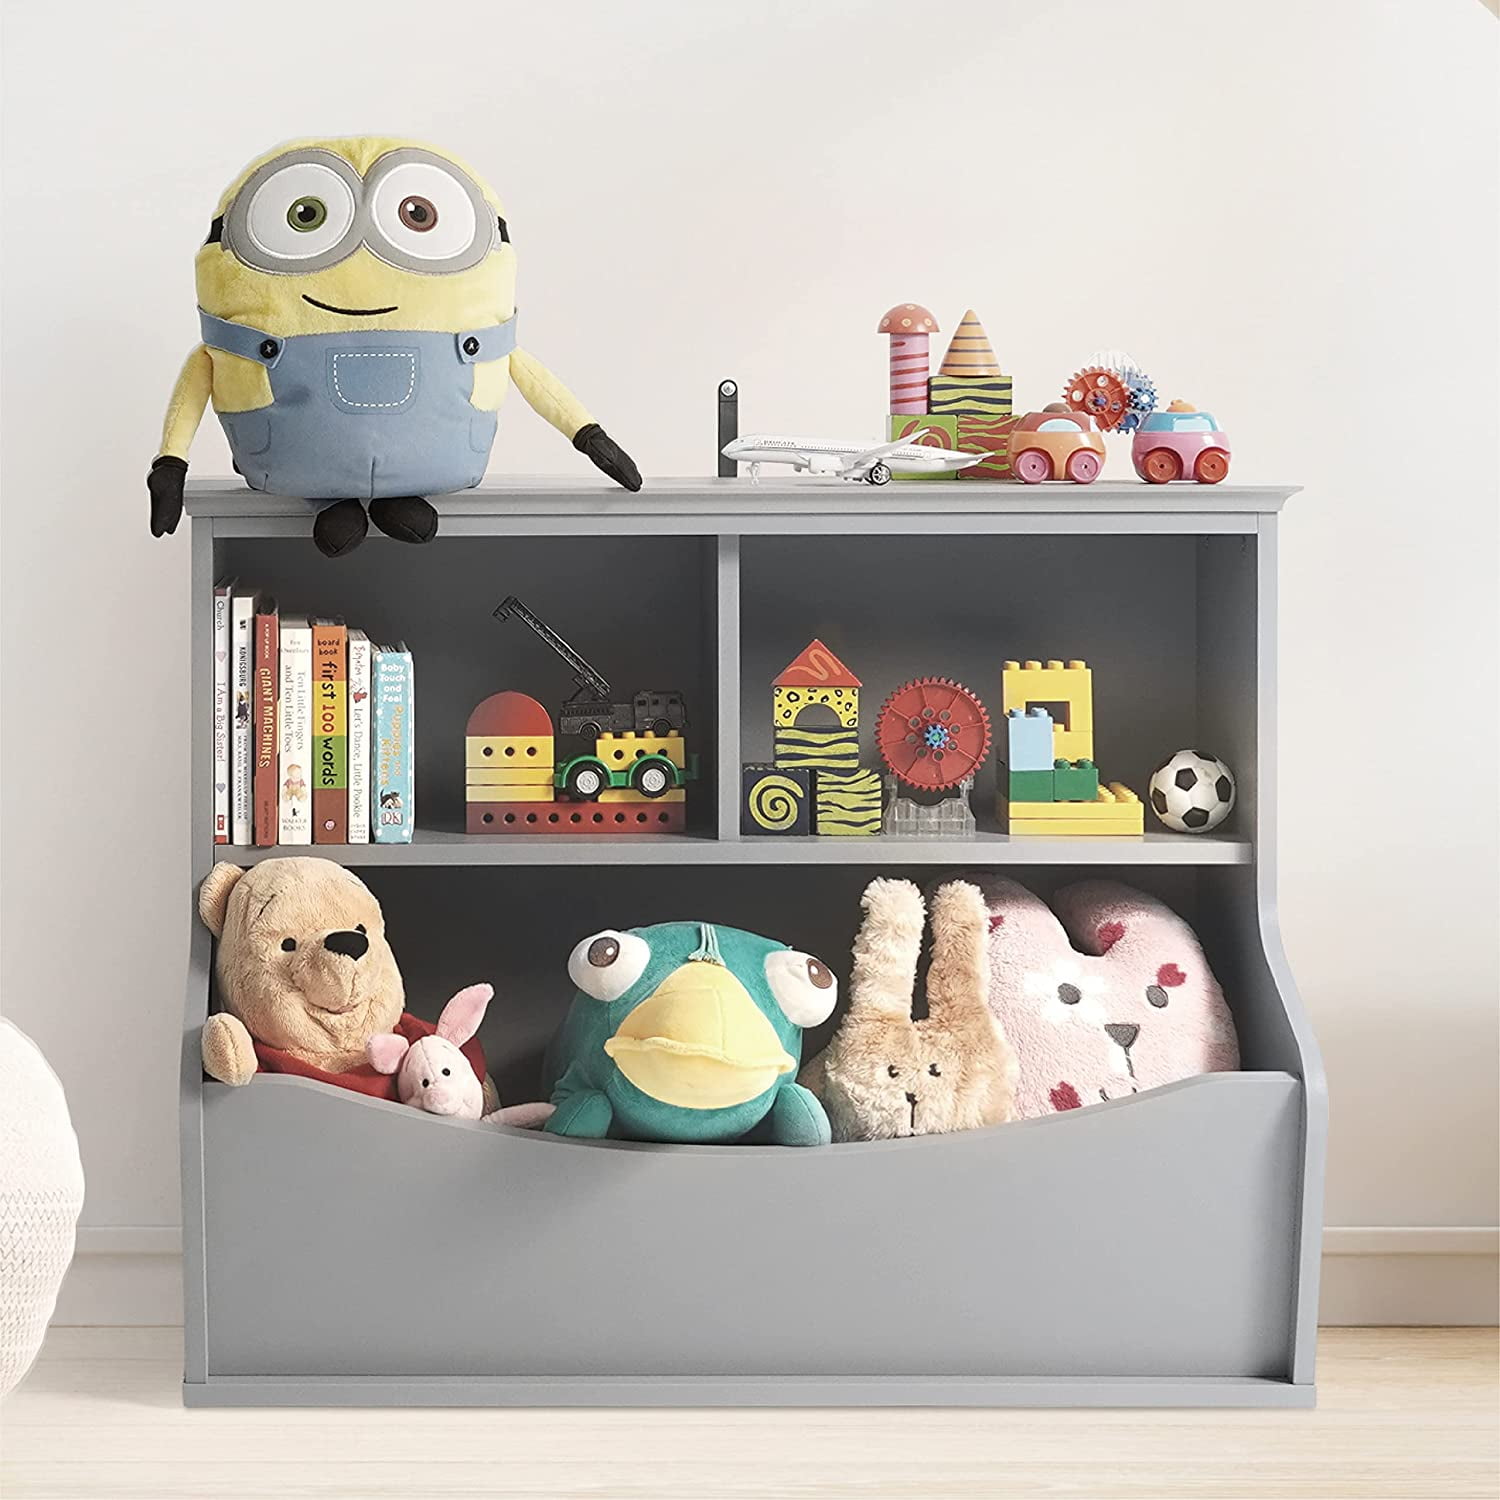 44 Best Toy Storage Ideas that Kids Will Love  Kids storage, Organization  kids, Kids playroom